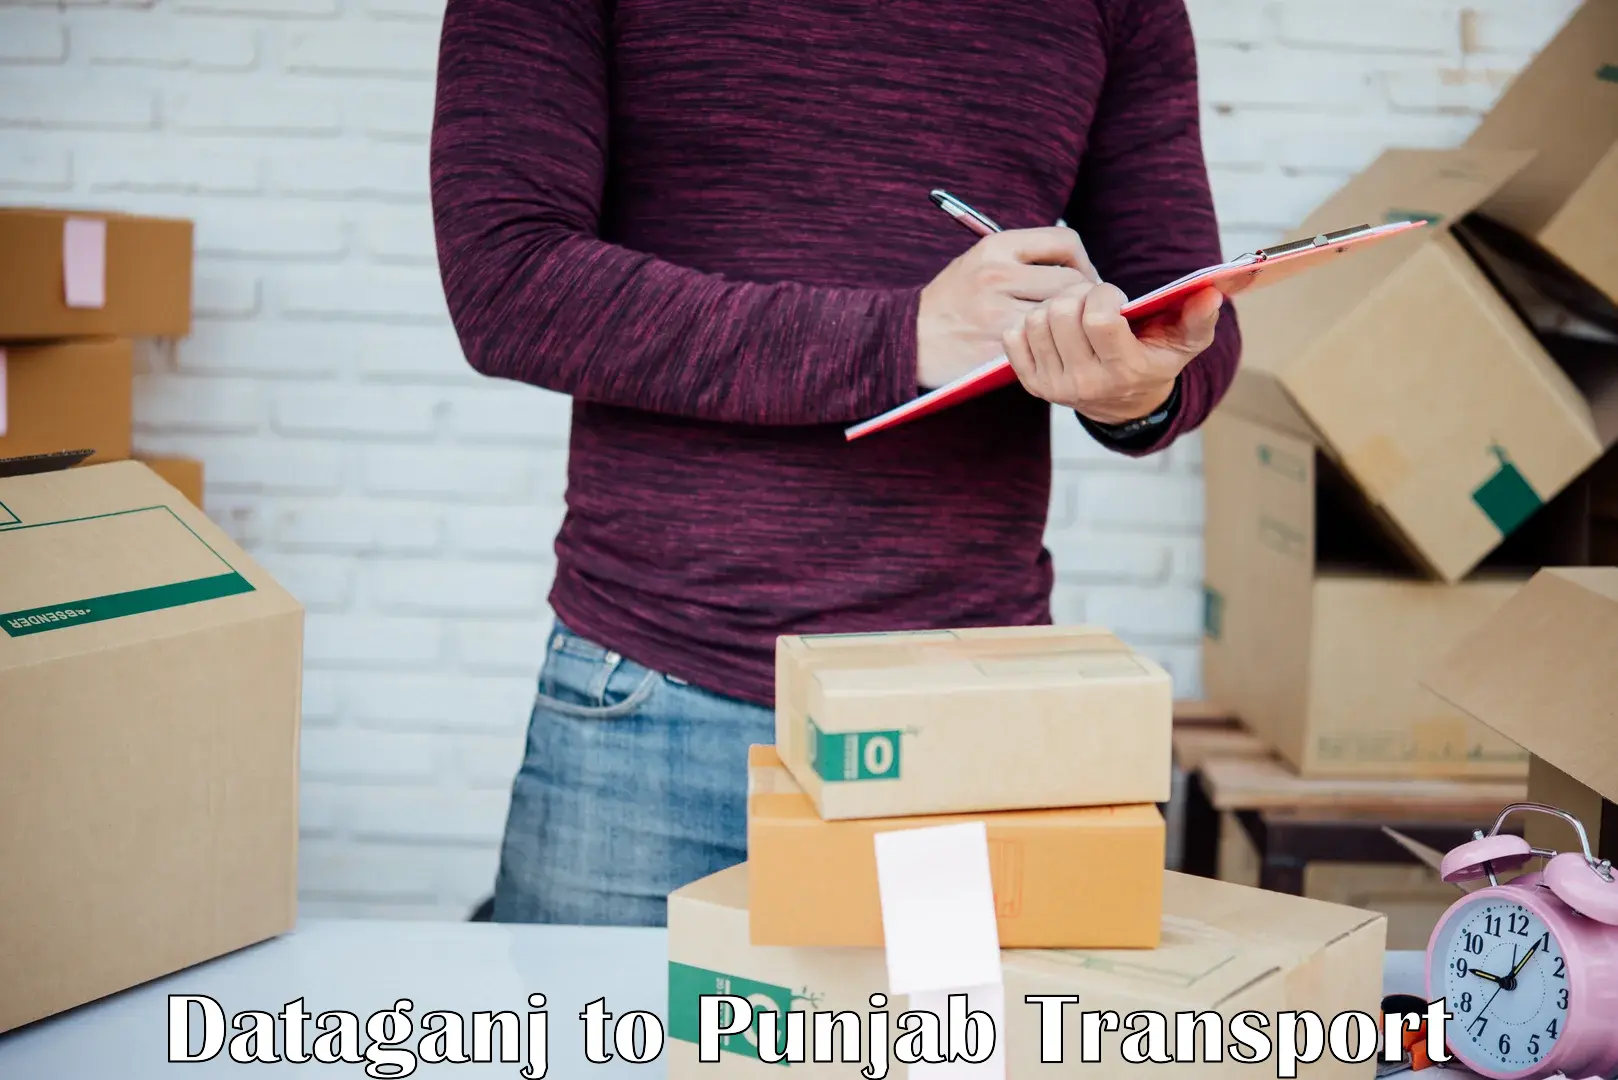 Land transport services in Dataganj to Punjab